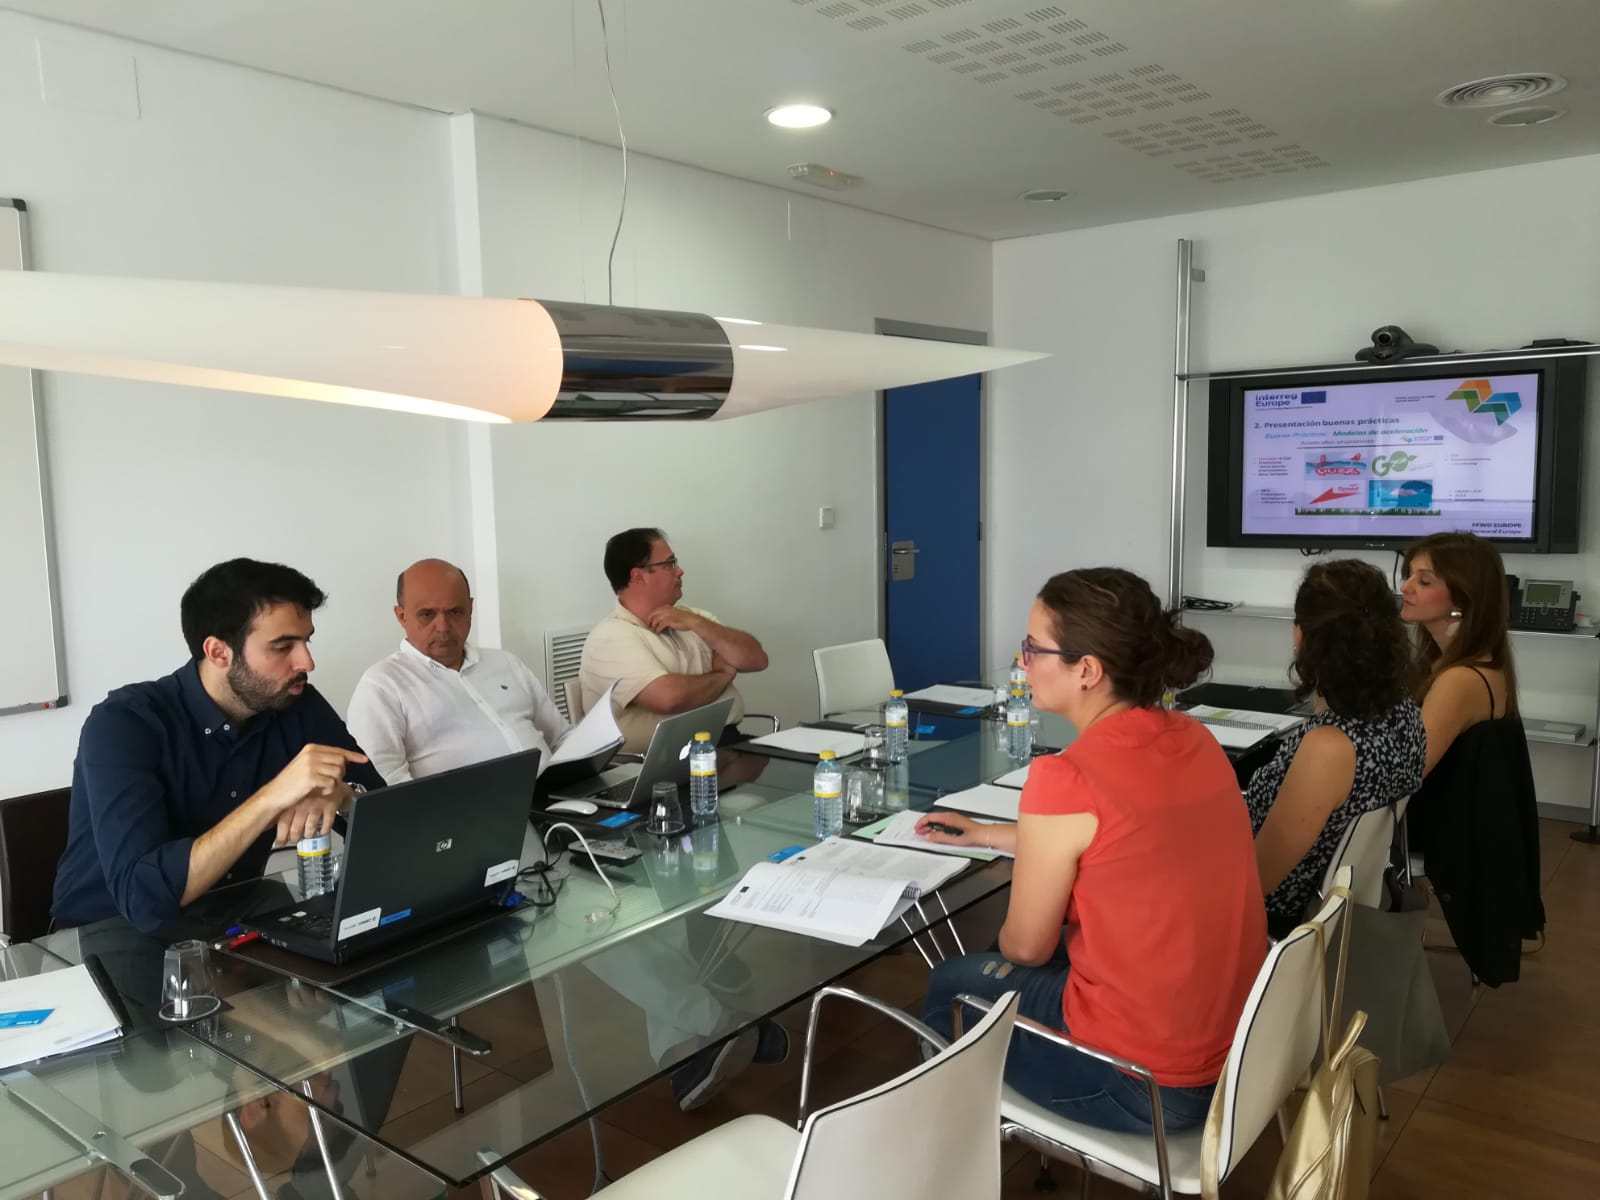 Third stakeholders meeting in Spain